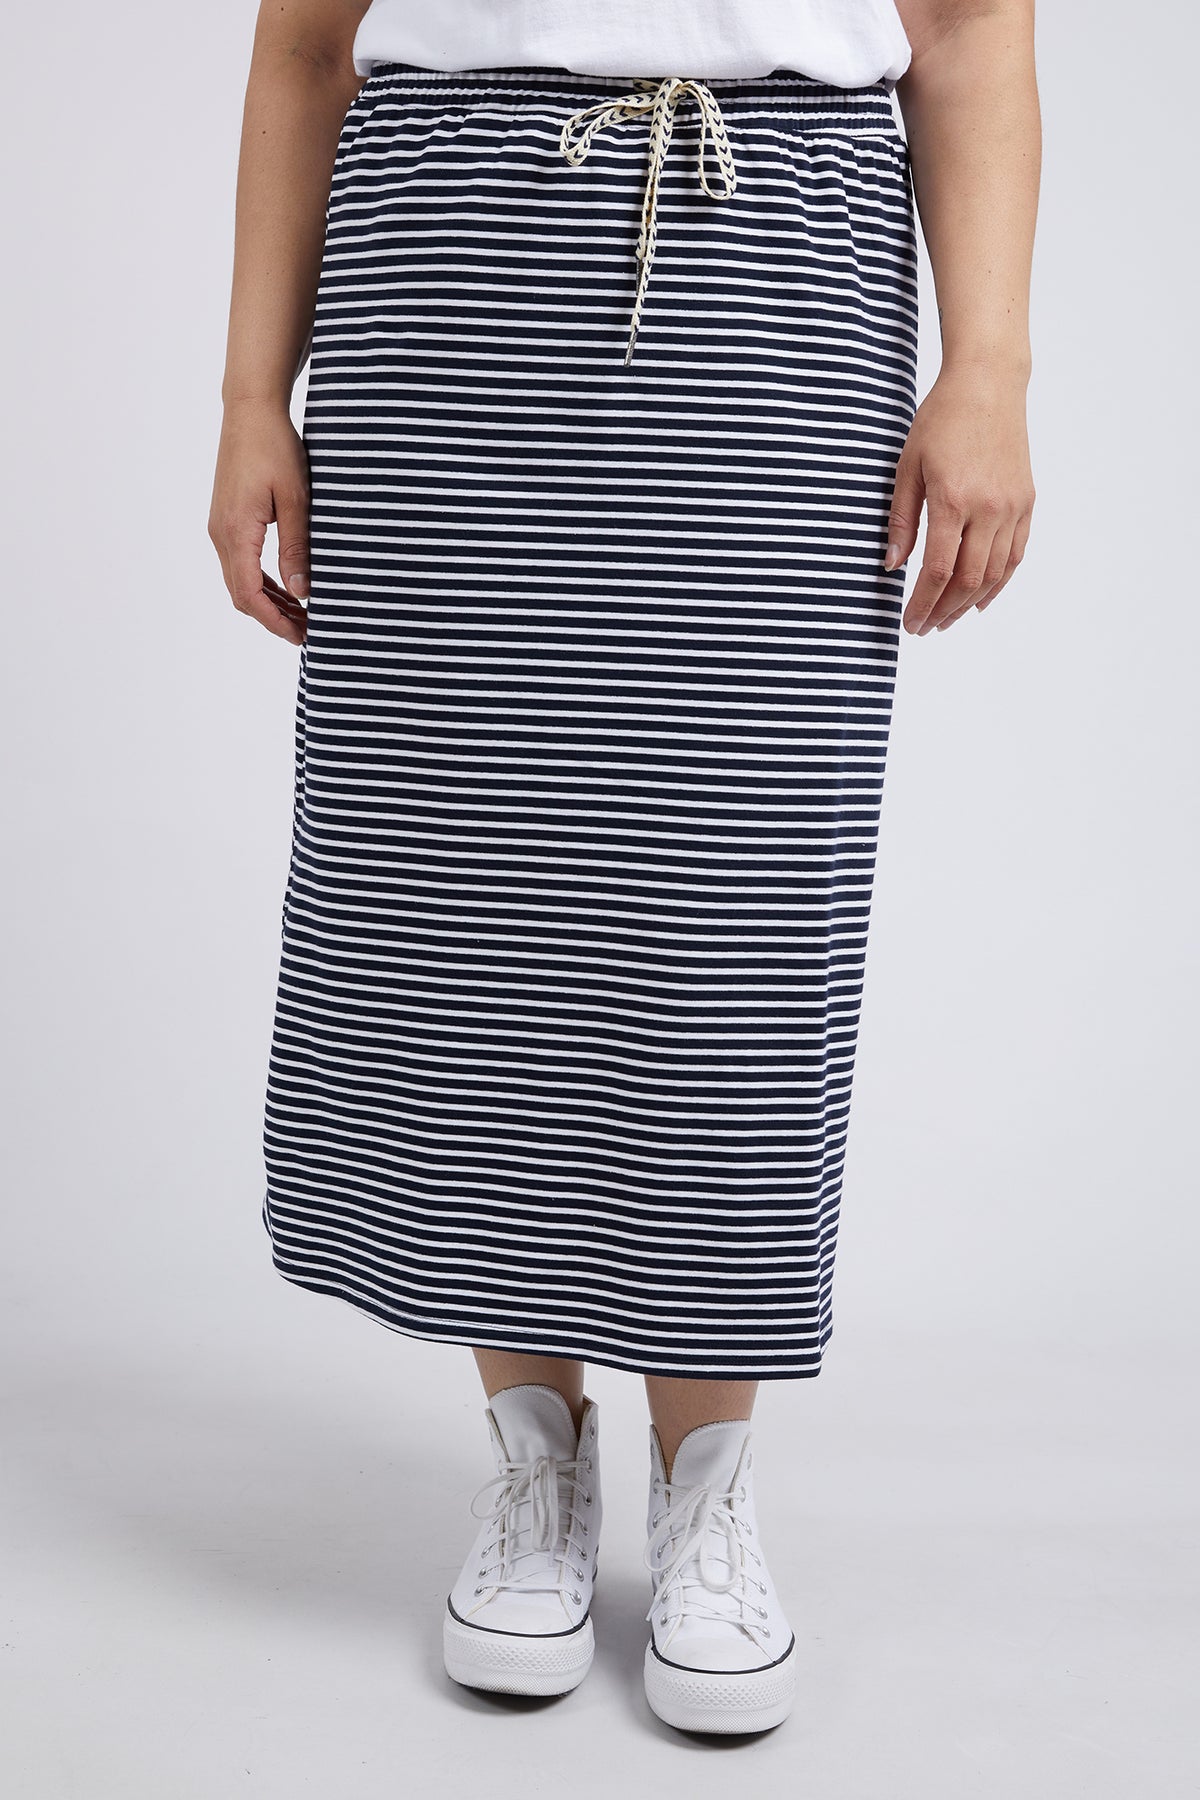 Travel Skirt Navy & White Stripe